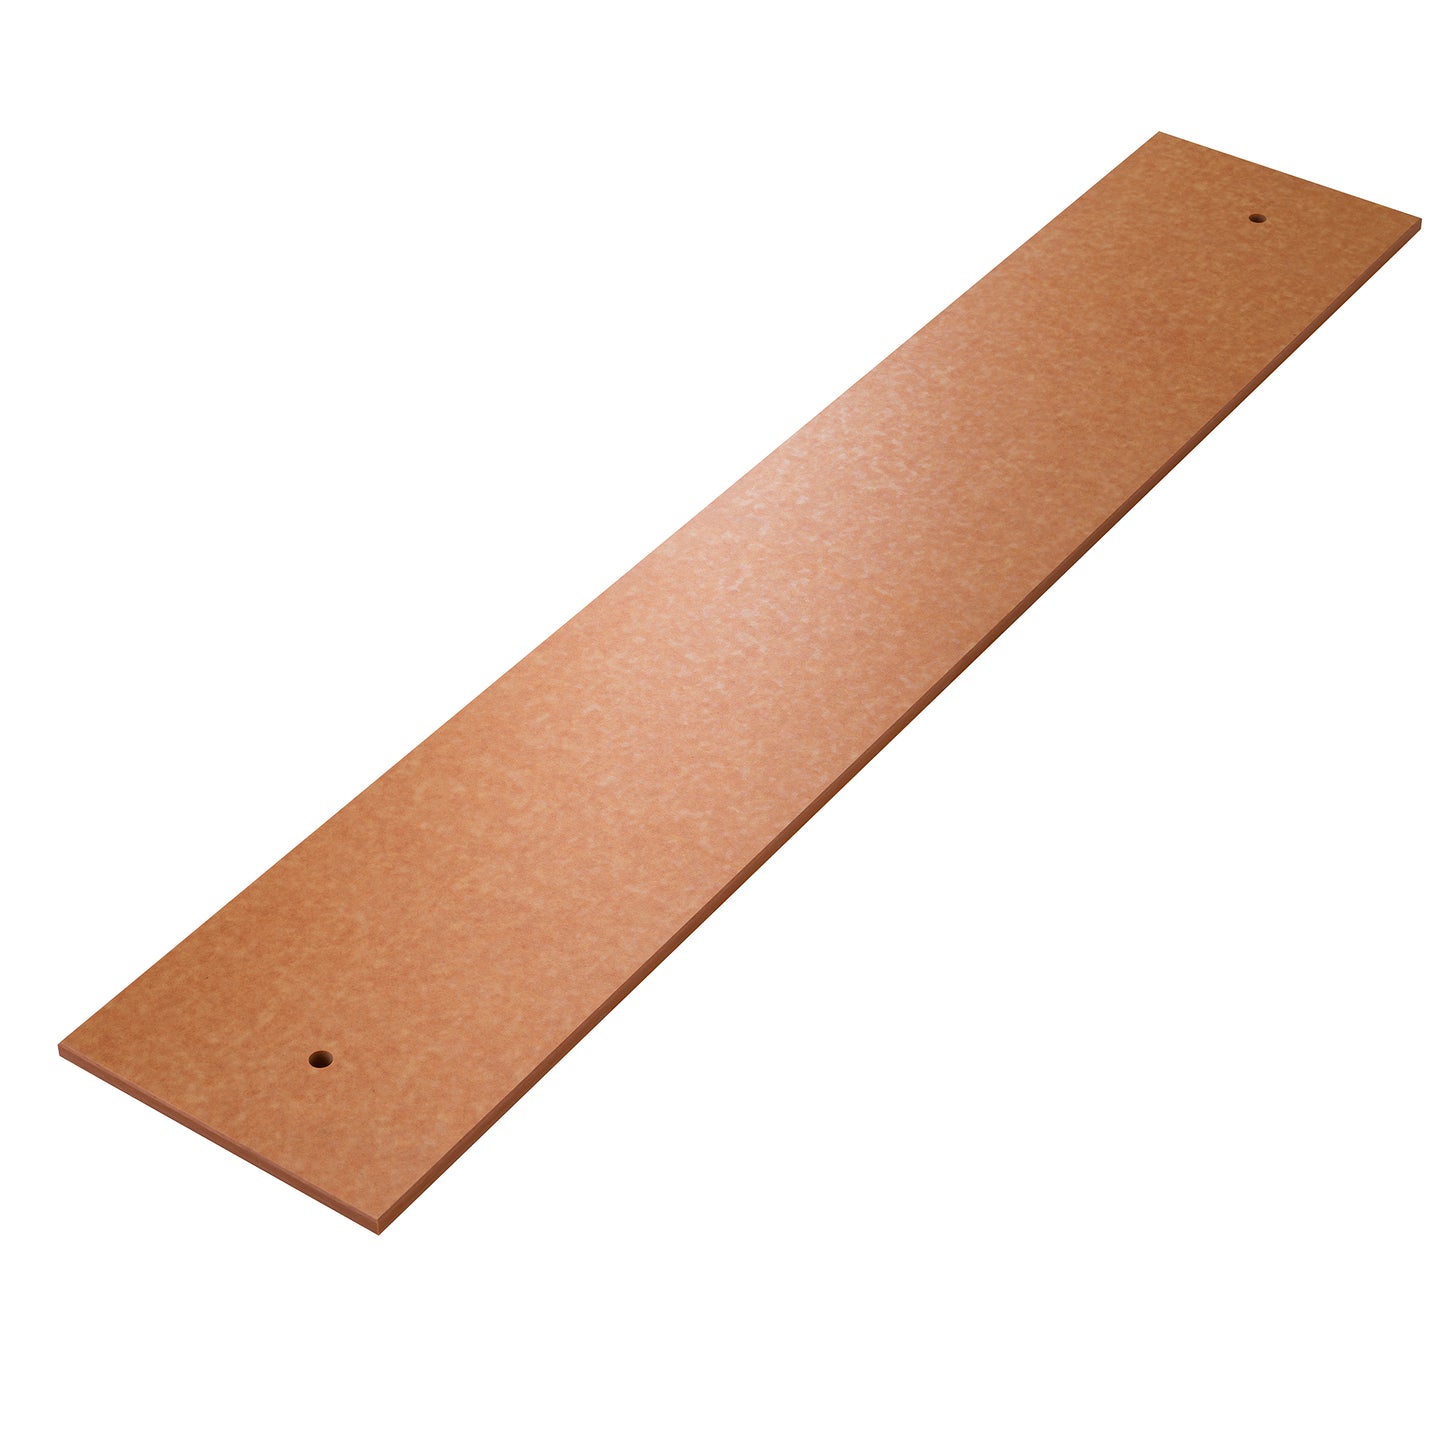 Composite wood-tone, pre-drilled cutting board - 1/2" X 11-3/4" X 36"" (SKU - 915151)